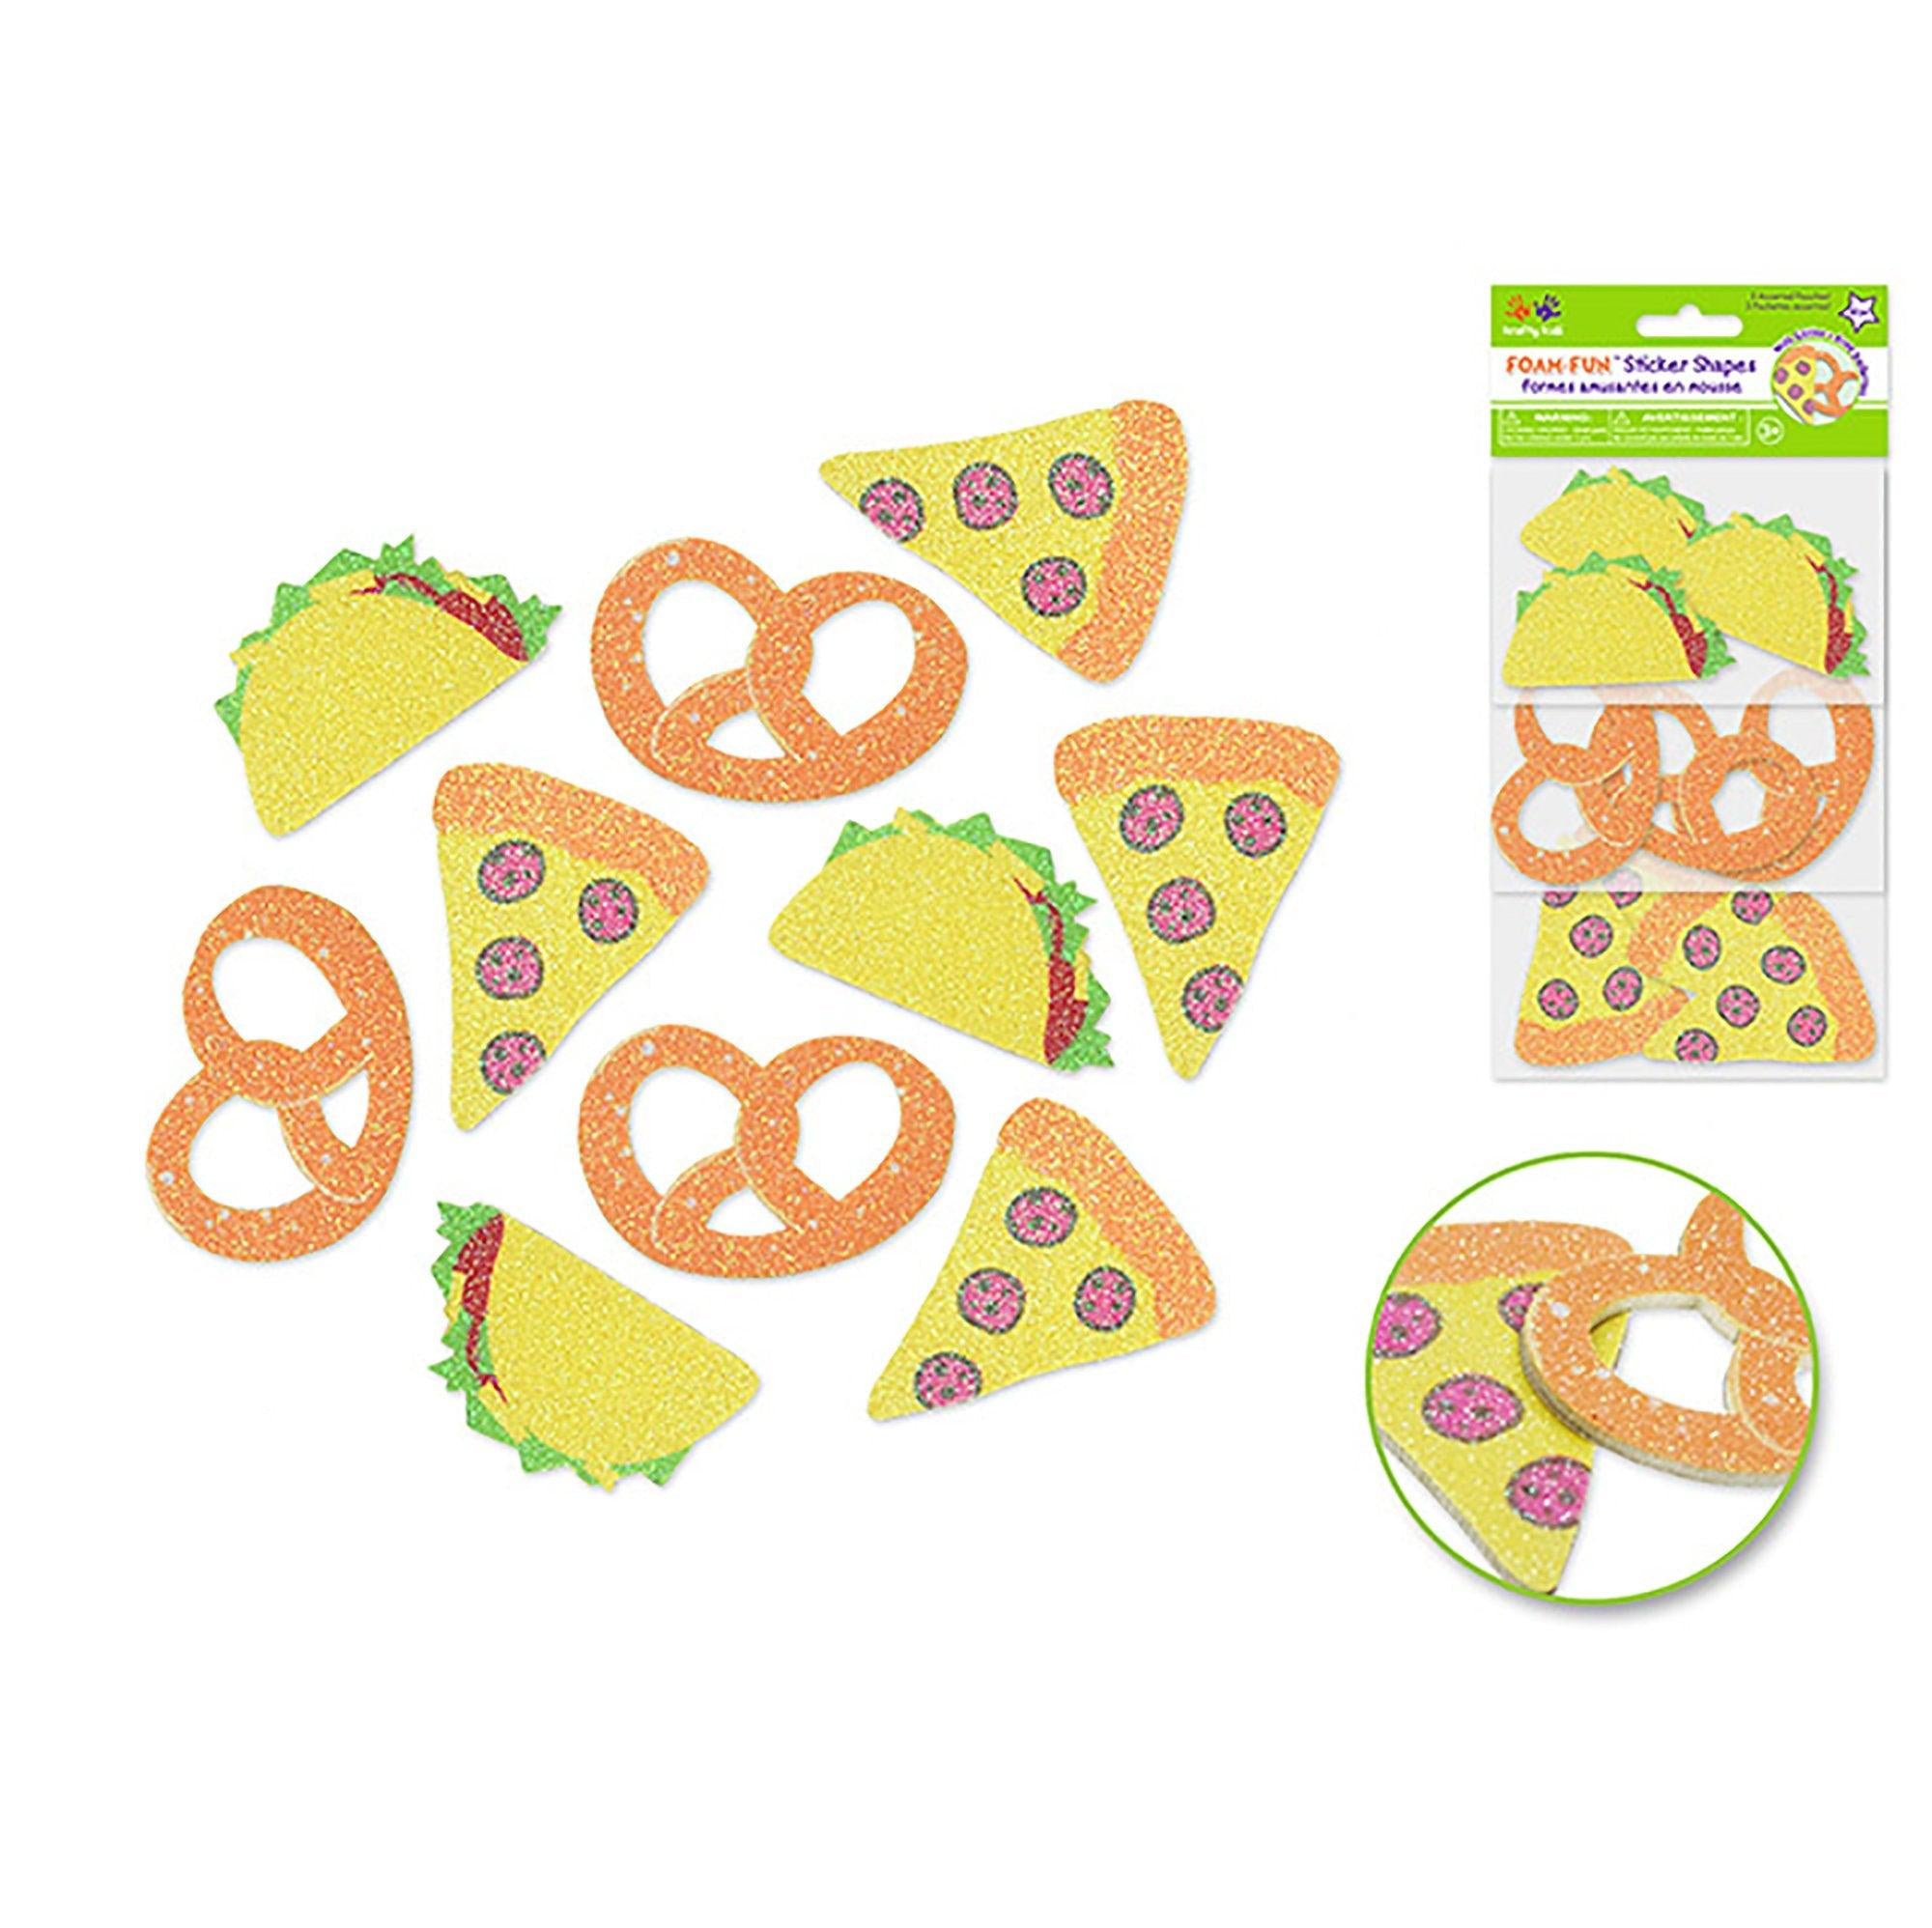 Krafty Kids: 3D Foam Fun Glitter Stickers I) Food Truck Treats - Dollar Max Depot